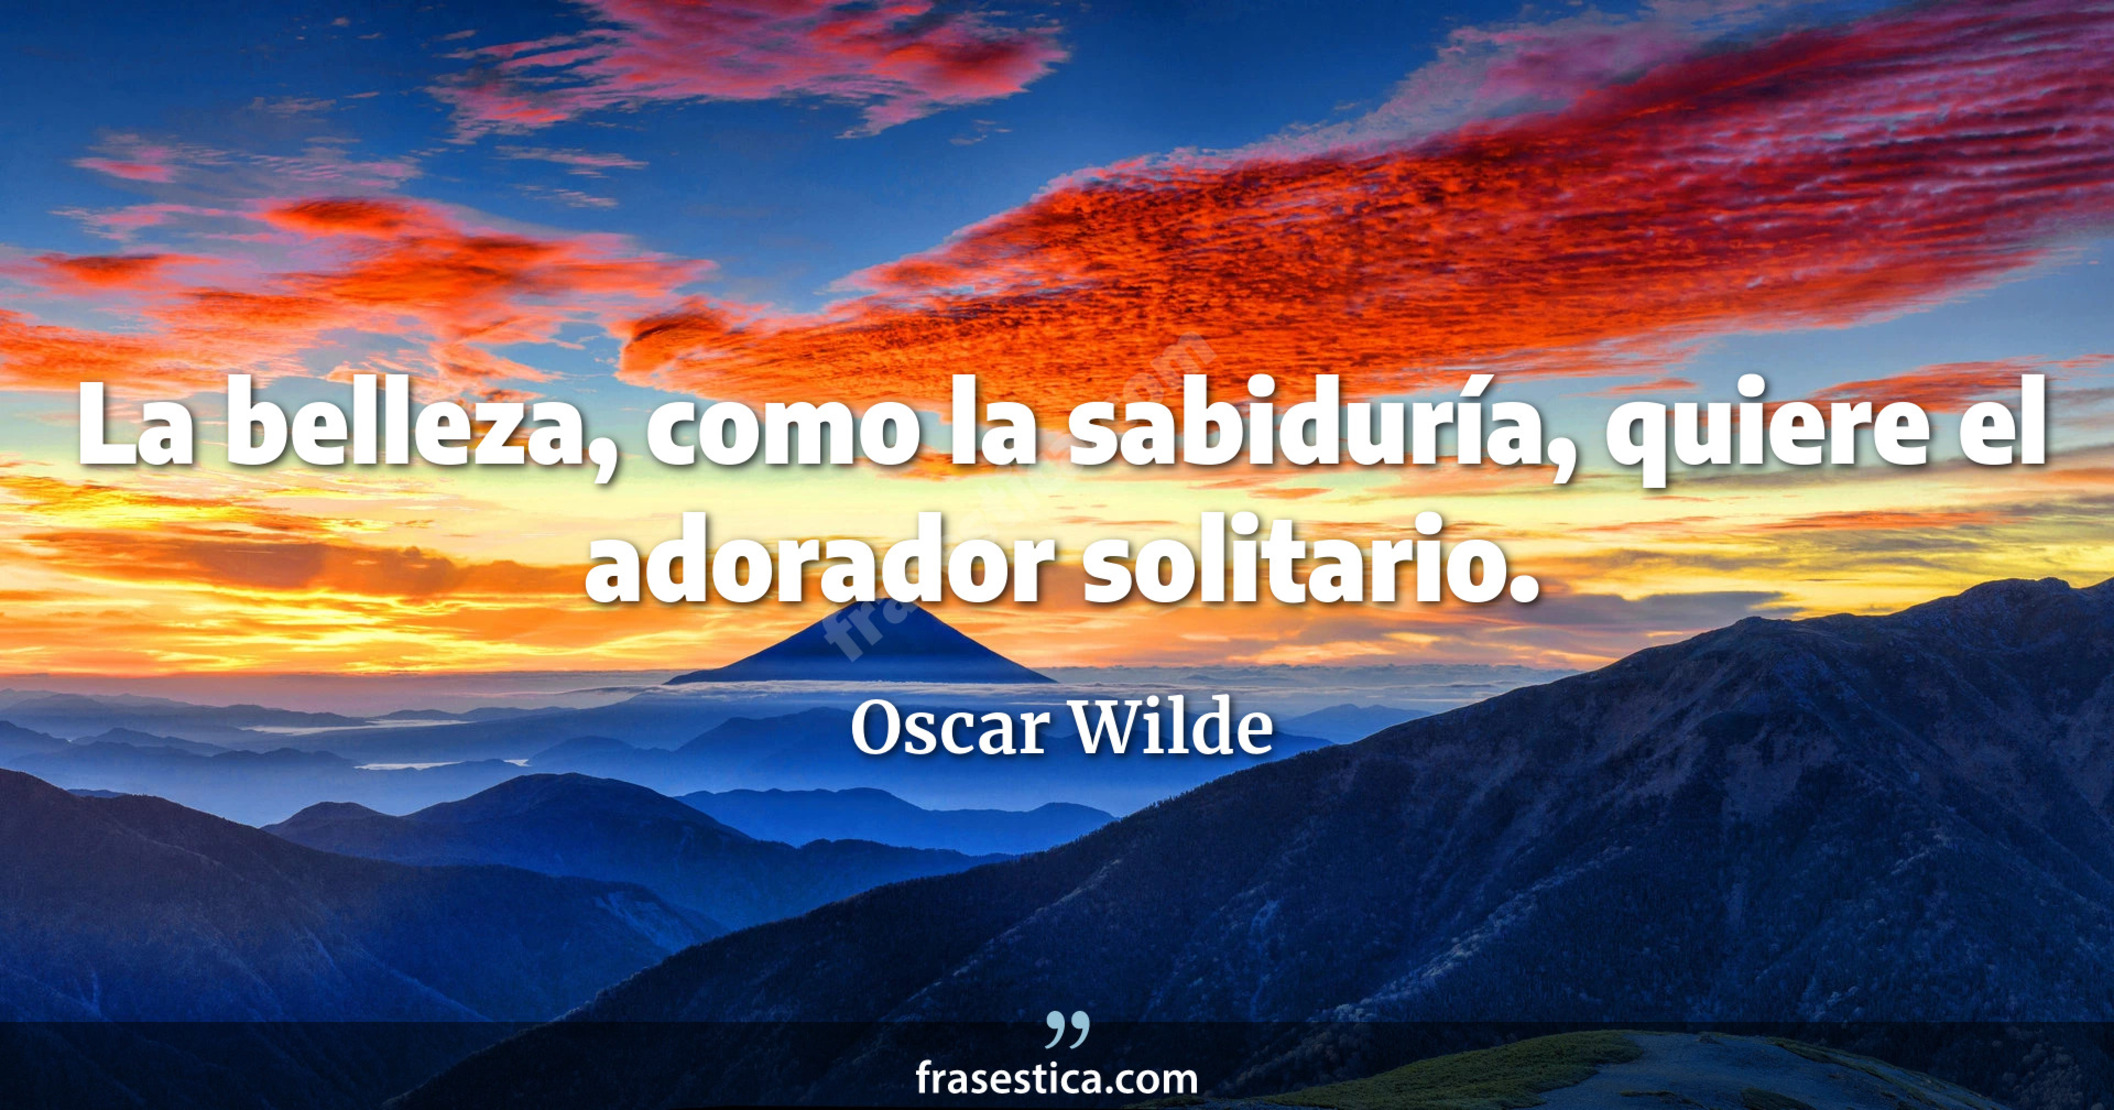 La belleza, como la sabiduría, quiere el adorador solitario. - Oscar Wilde